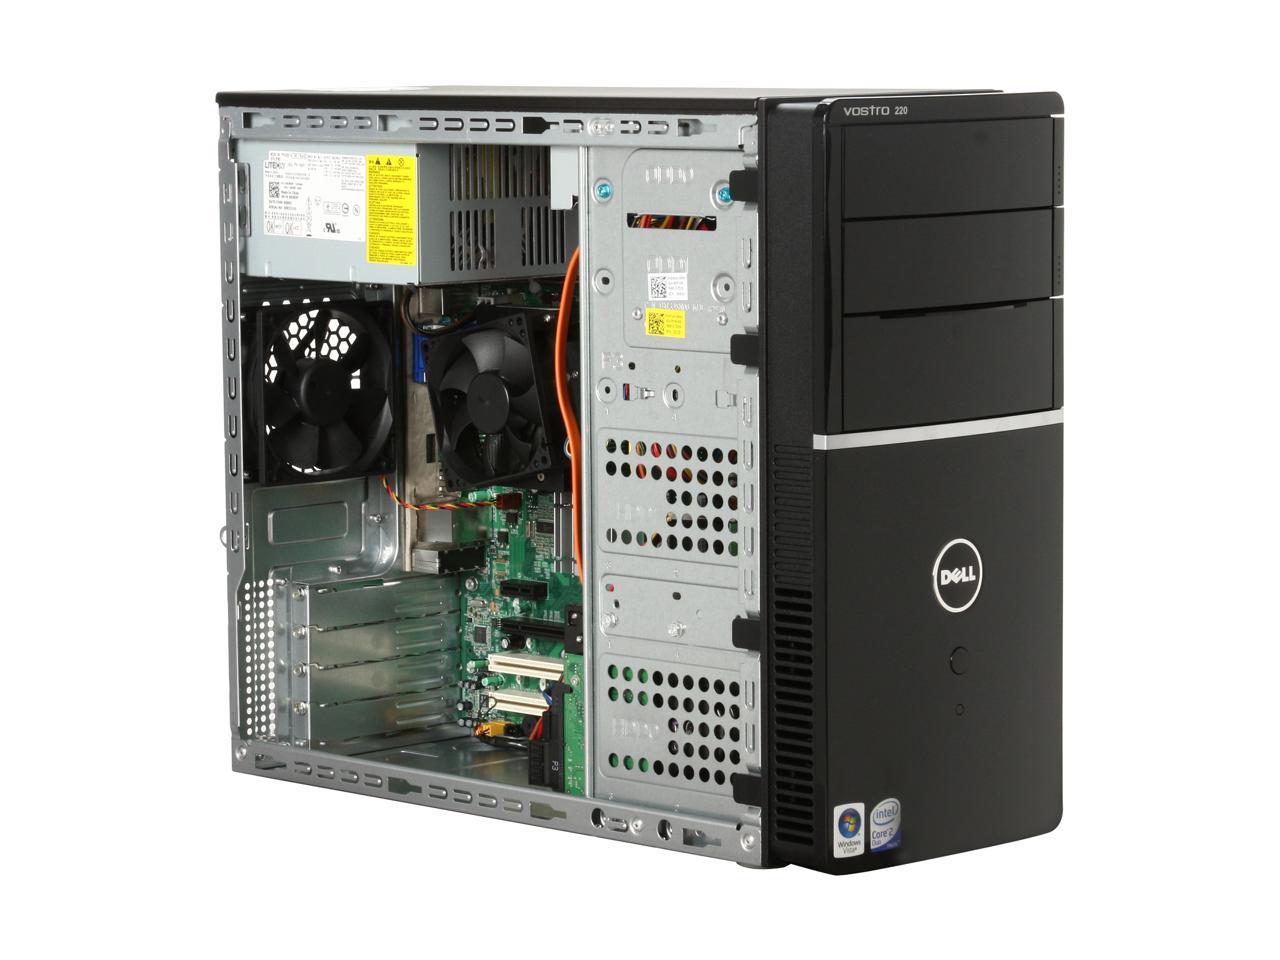 DELL Desktop PC Vostro 220 (464-2577) Core 2 Duo E8400 (3.00 